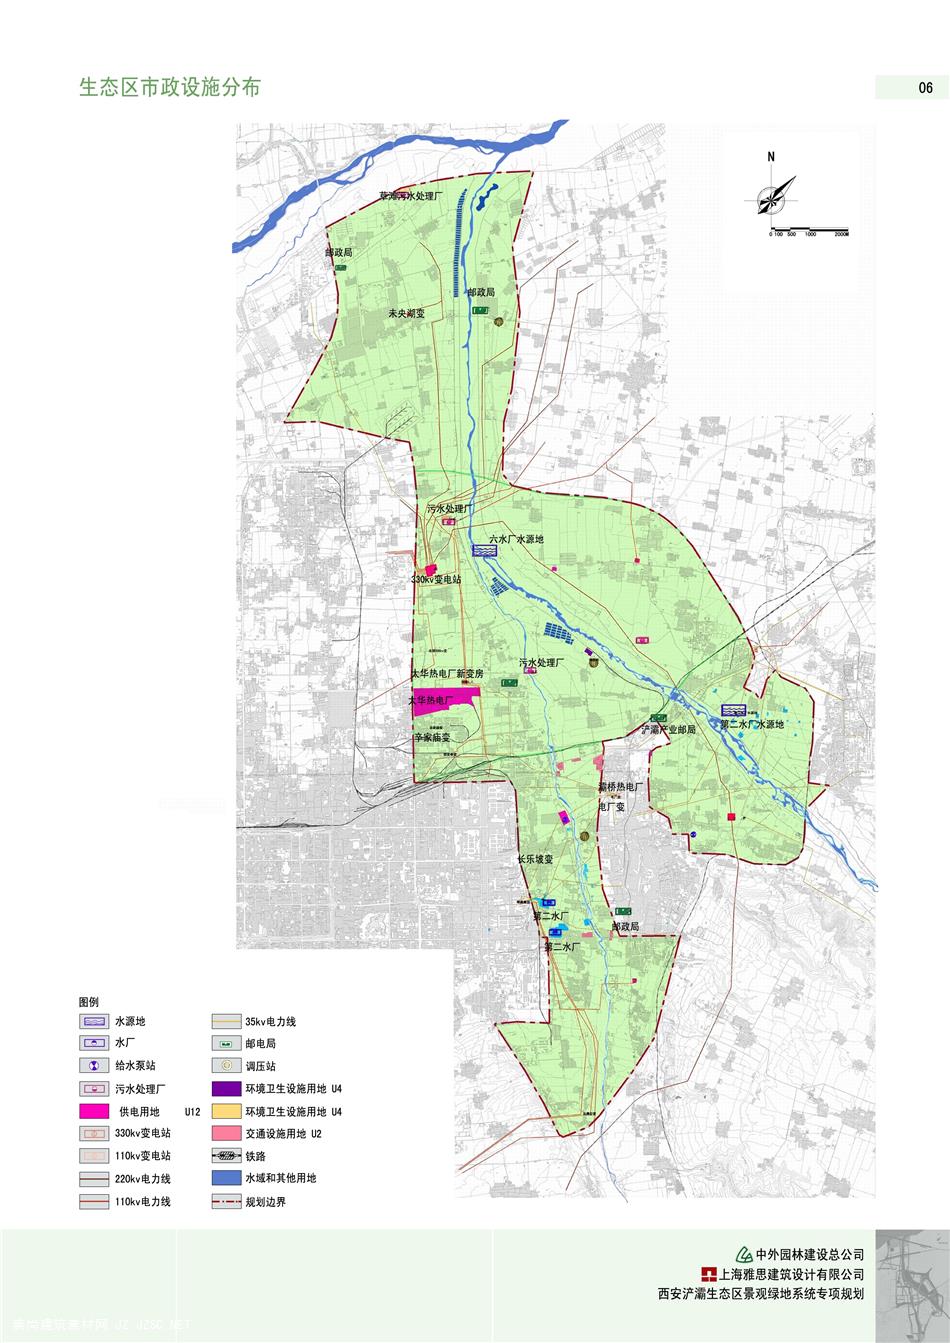 64西安浐灞生态区绿地系统规划